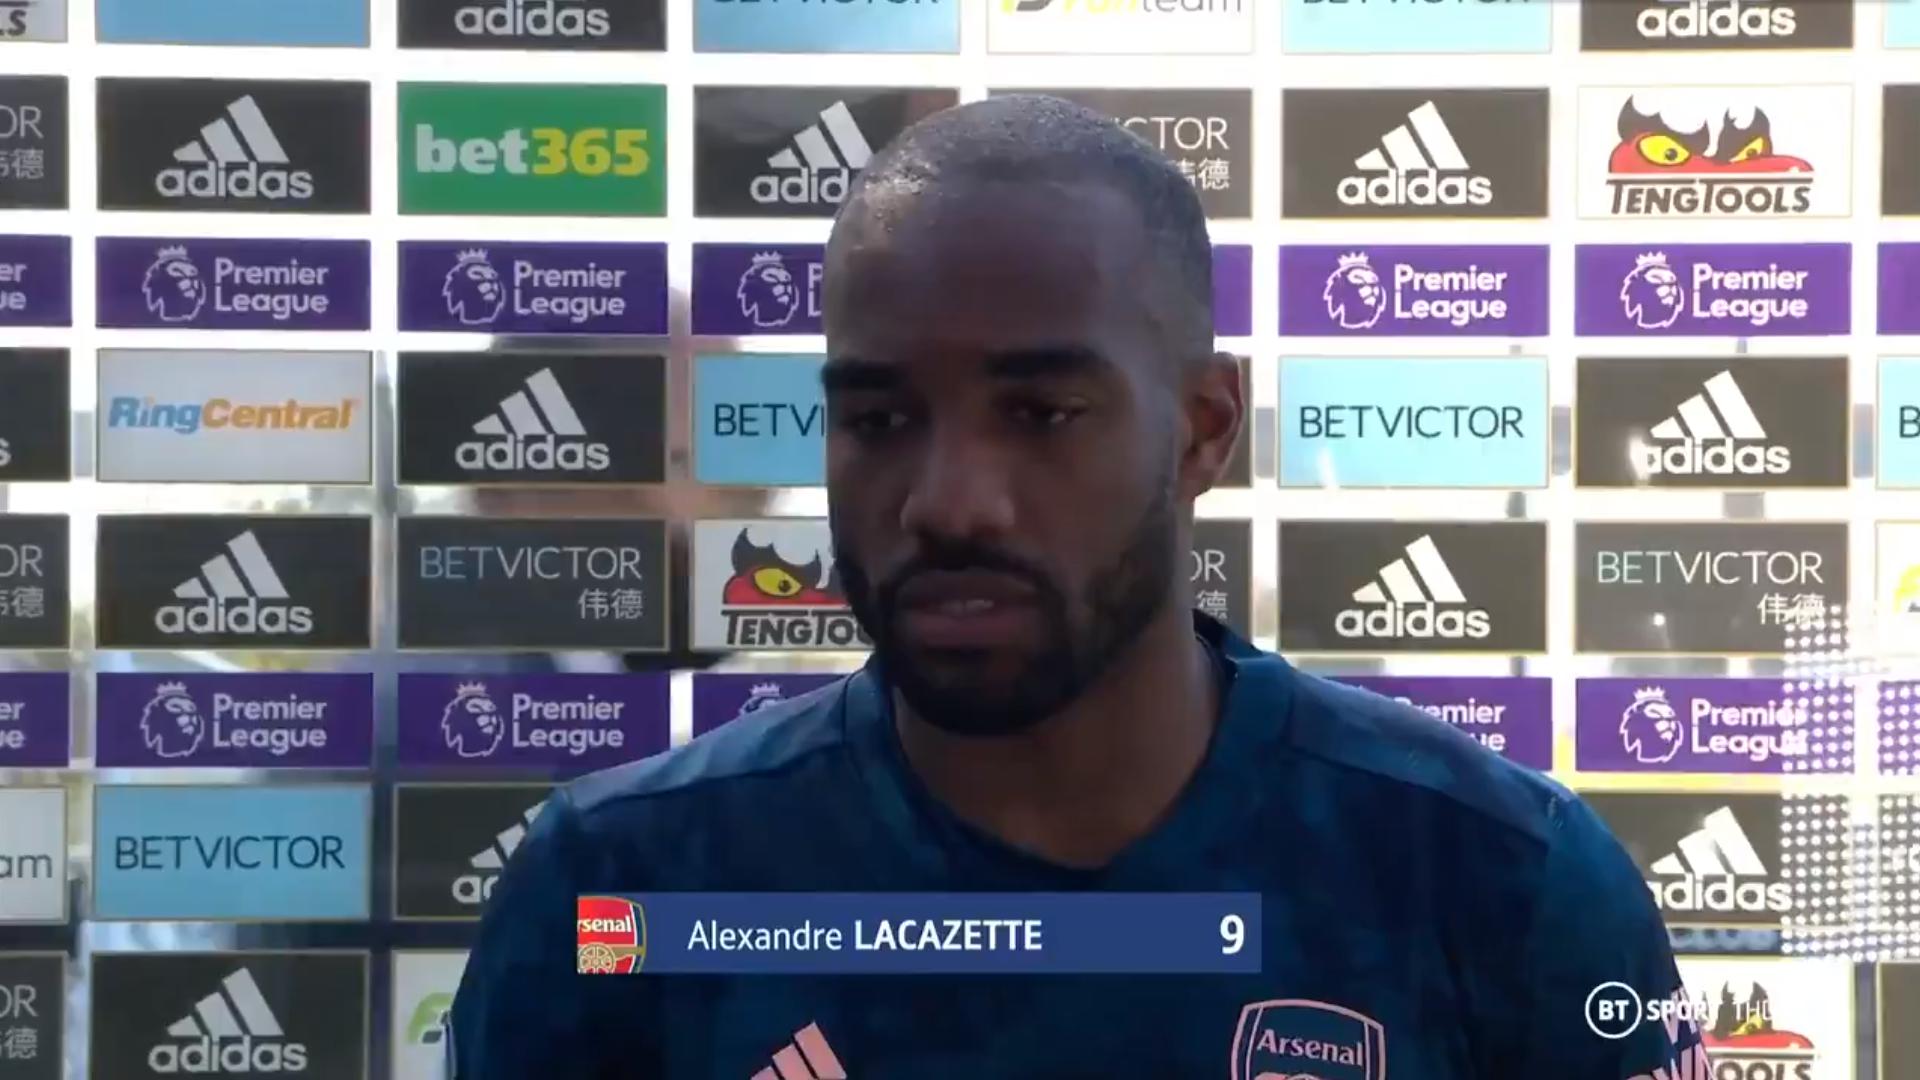 拉卡泽特: 我在阿森纳很开心, 希望能继续帮助球队不断提高(1)